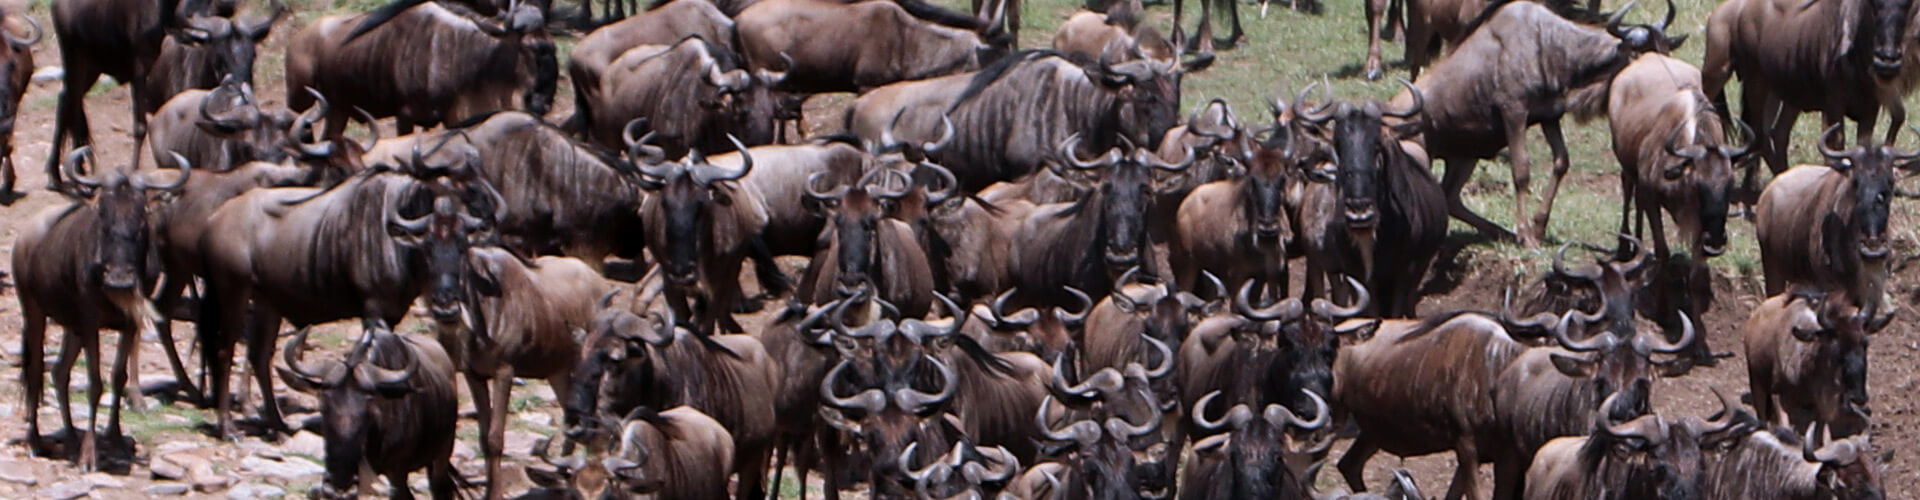 Gnuwanderung Masai Mara